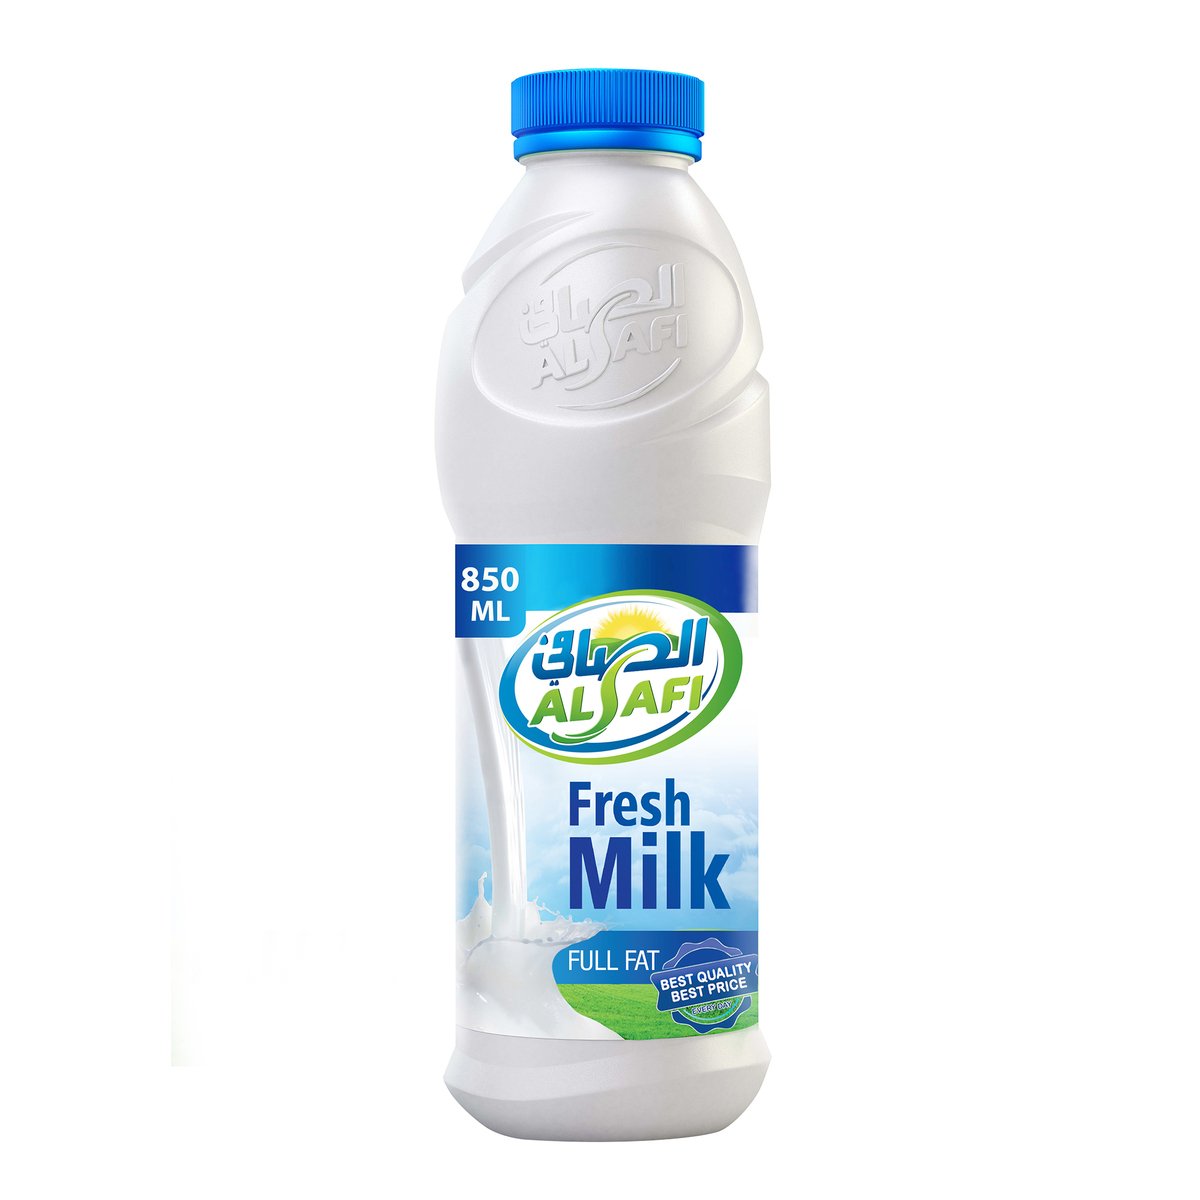 Al Safi Fresh Milk Full Fat 850ml